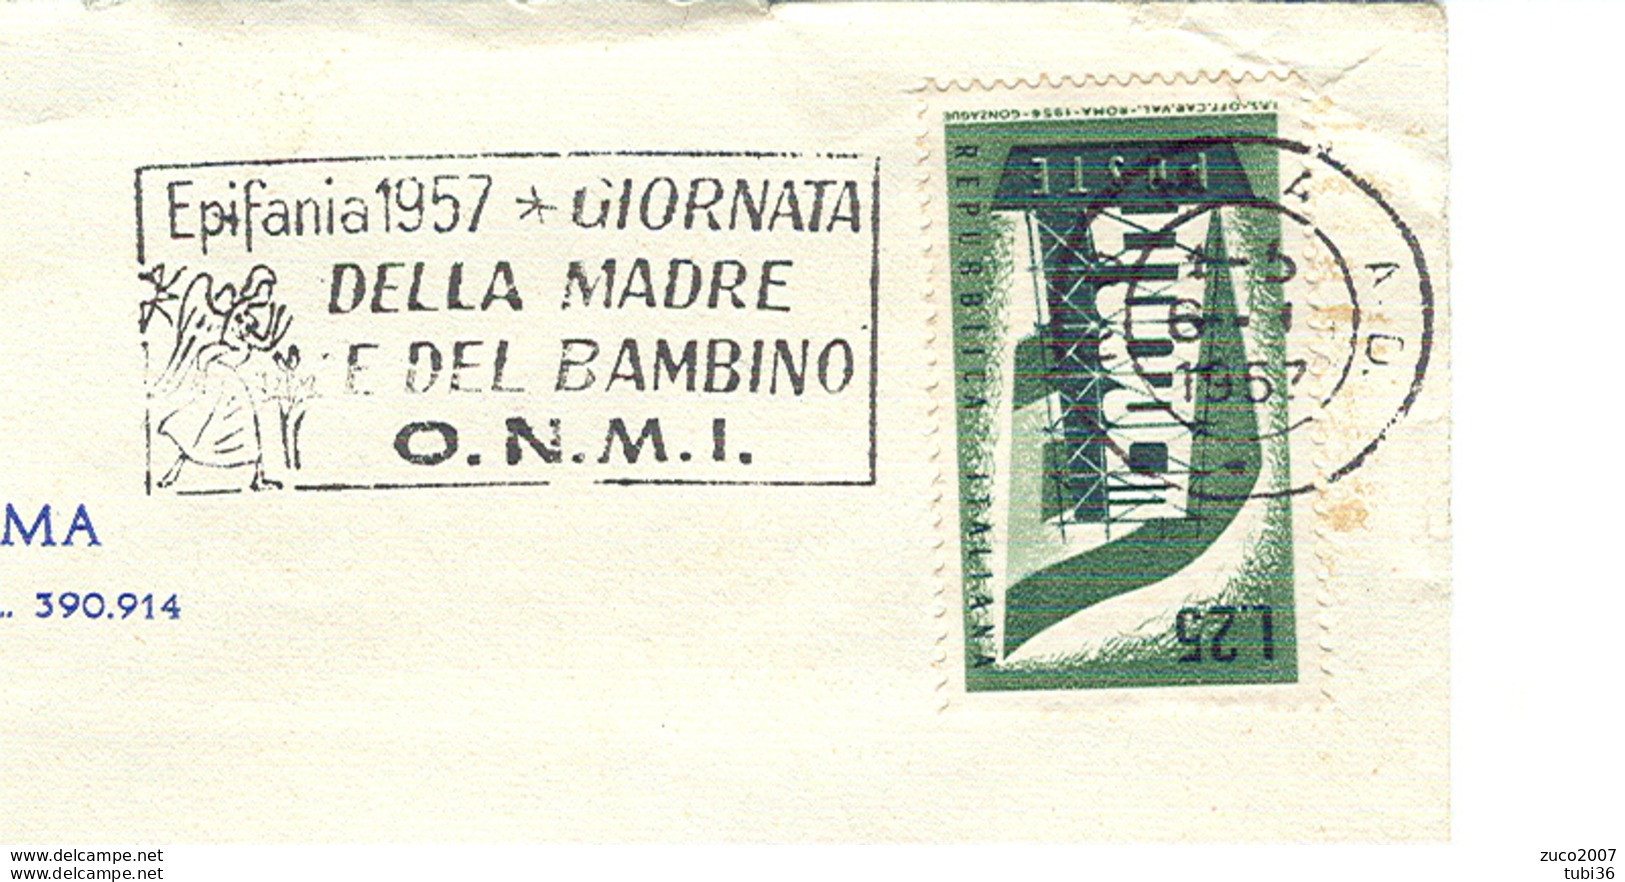 EPIFANIA 1957, GIORNATA DELLA MADRE E DEL BAMBINO- O.N.M.I.- TIMBRO POSTE ROMA TARGHETTA,1957,CIRCOLO CANOTTIERI,ROMA, - Moederdag